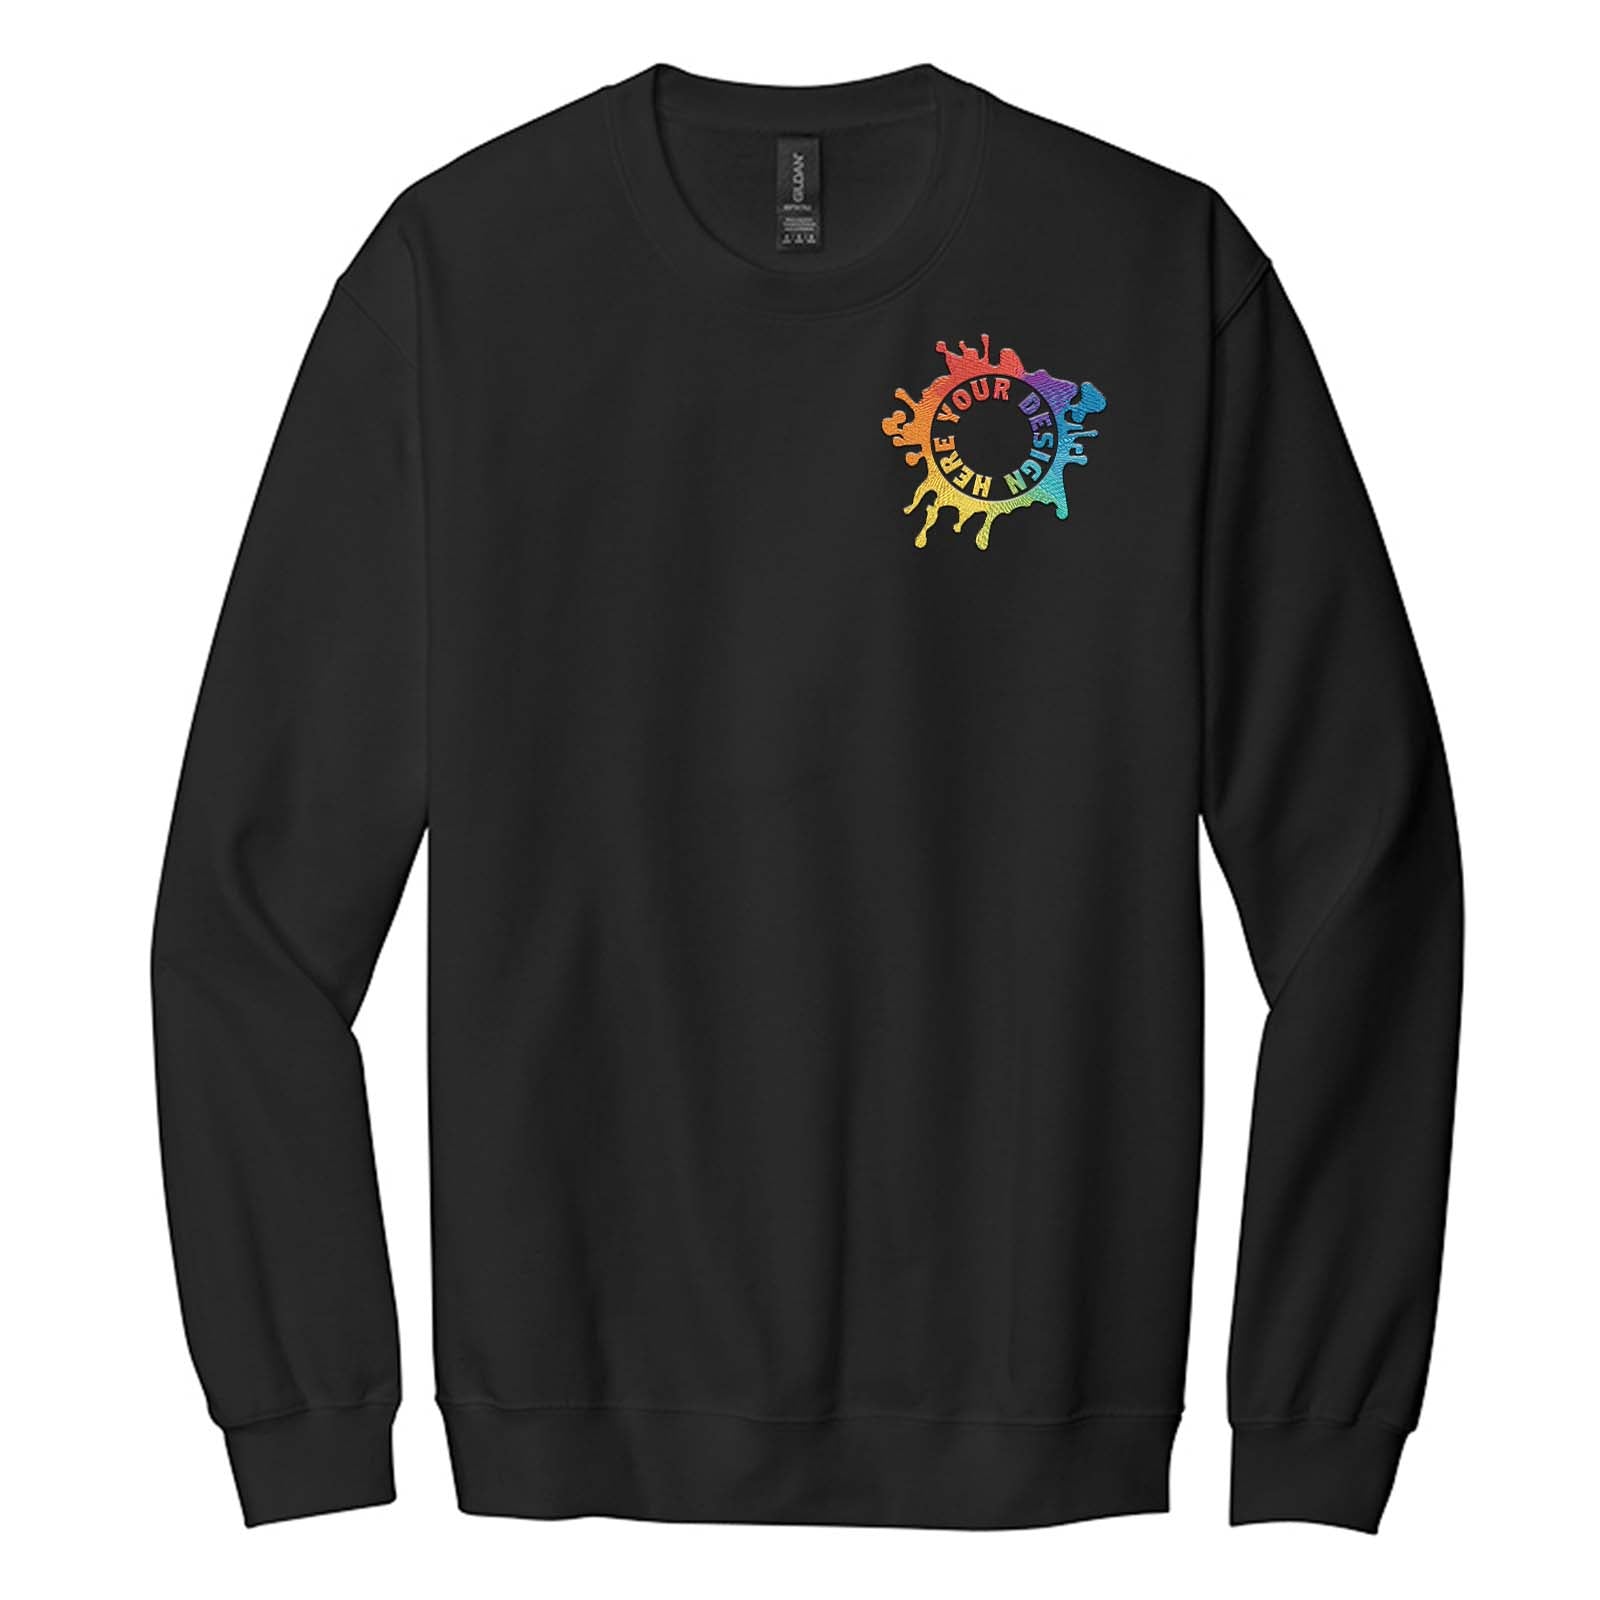 Gildan Softstyle Crewneck Sweatshirt Embroidery - Mato & Hash